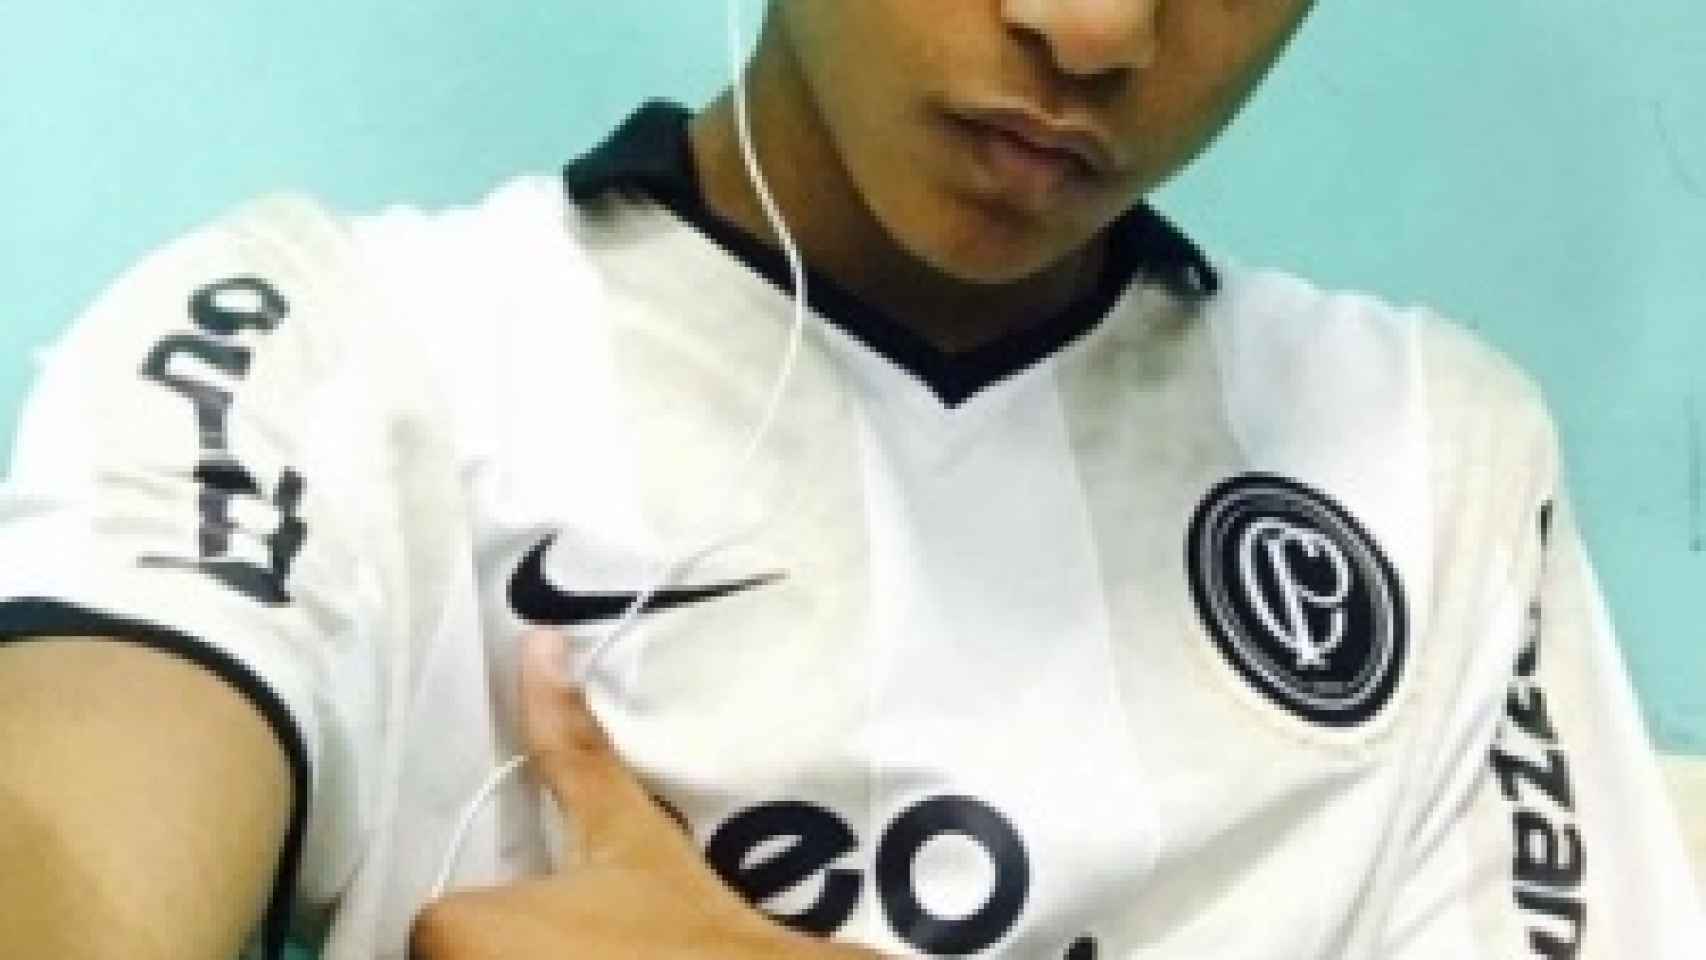 Muere un chico de 16 años tras sufrir un paro cardíaco jugando al fútbol